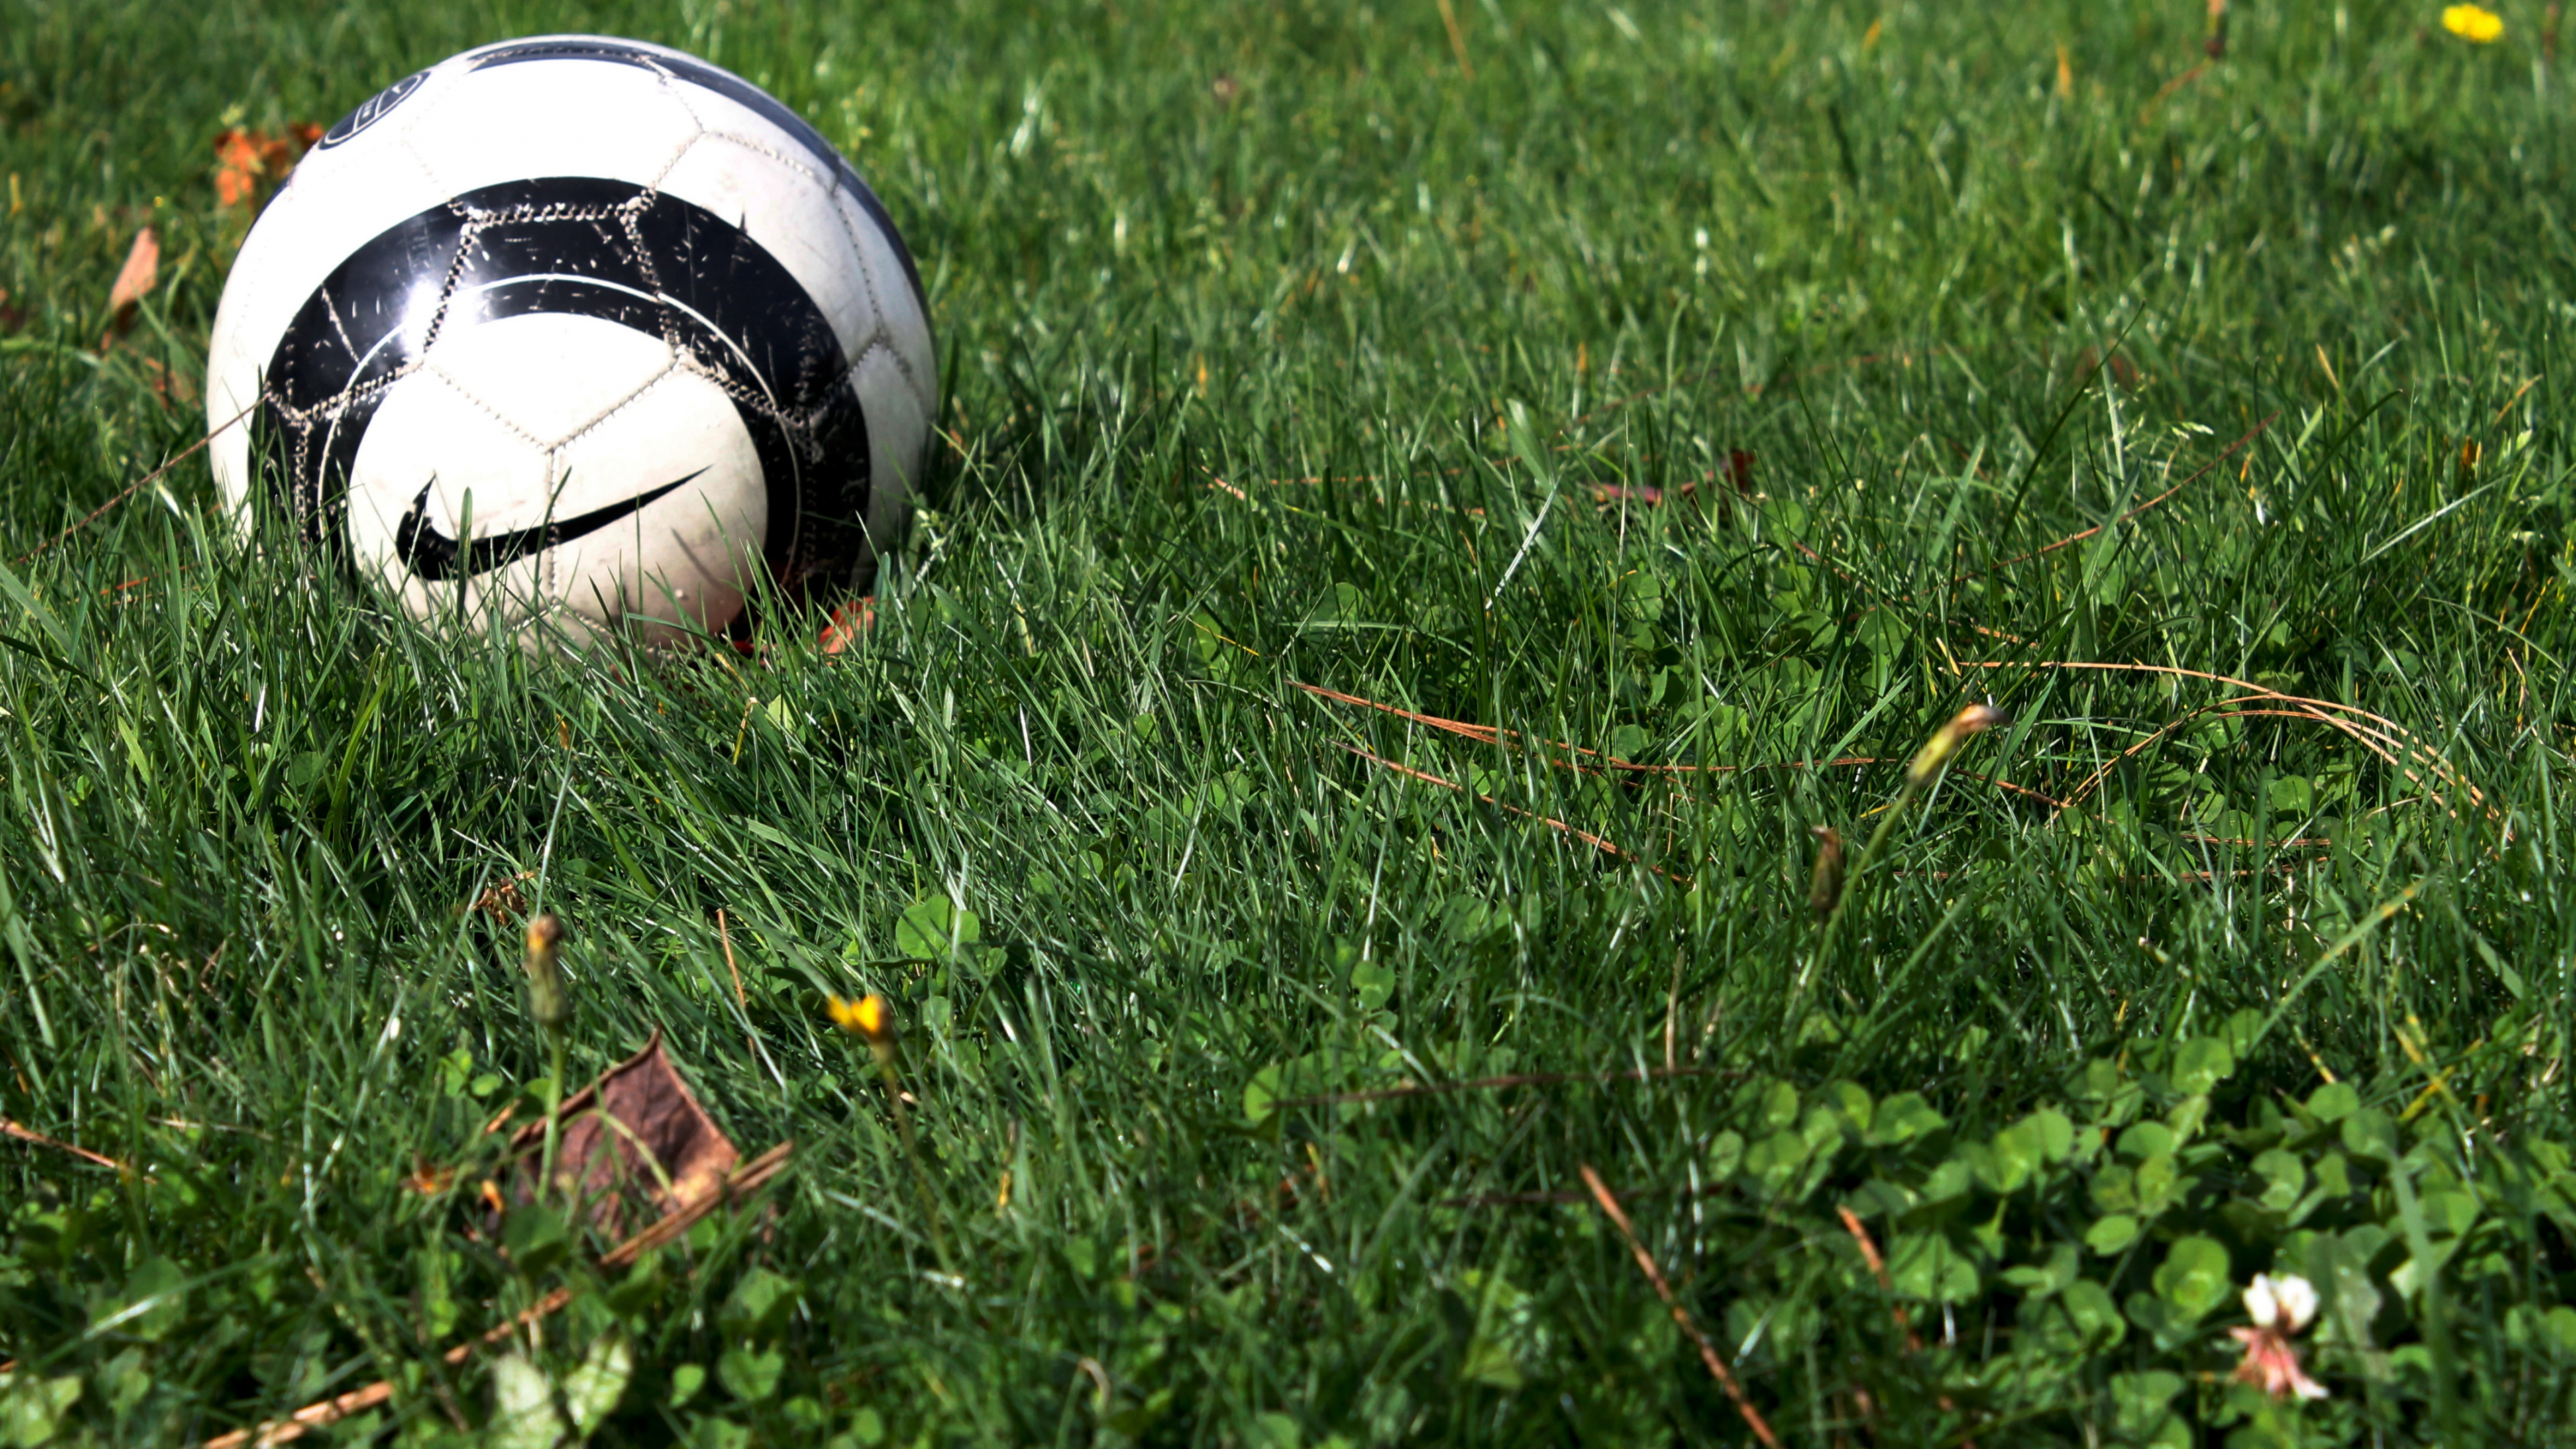 球, 体育设备, 足球, 草, 草坪 壁纸 3840x2160 允许